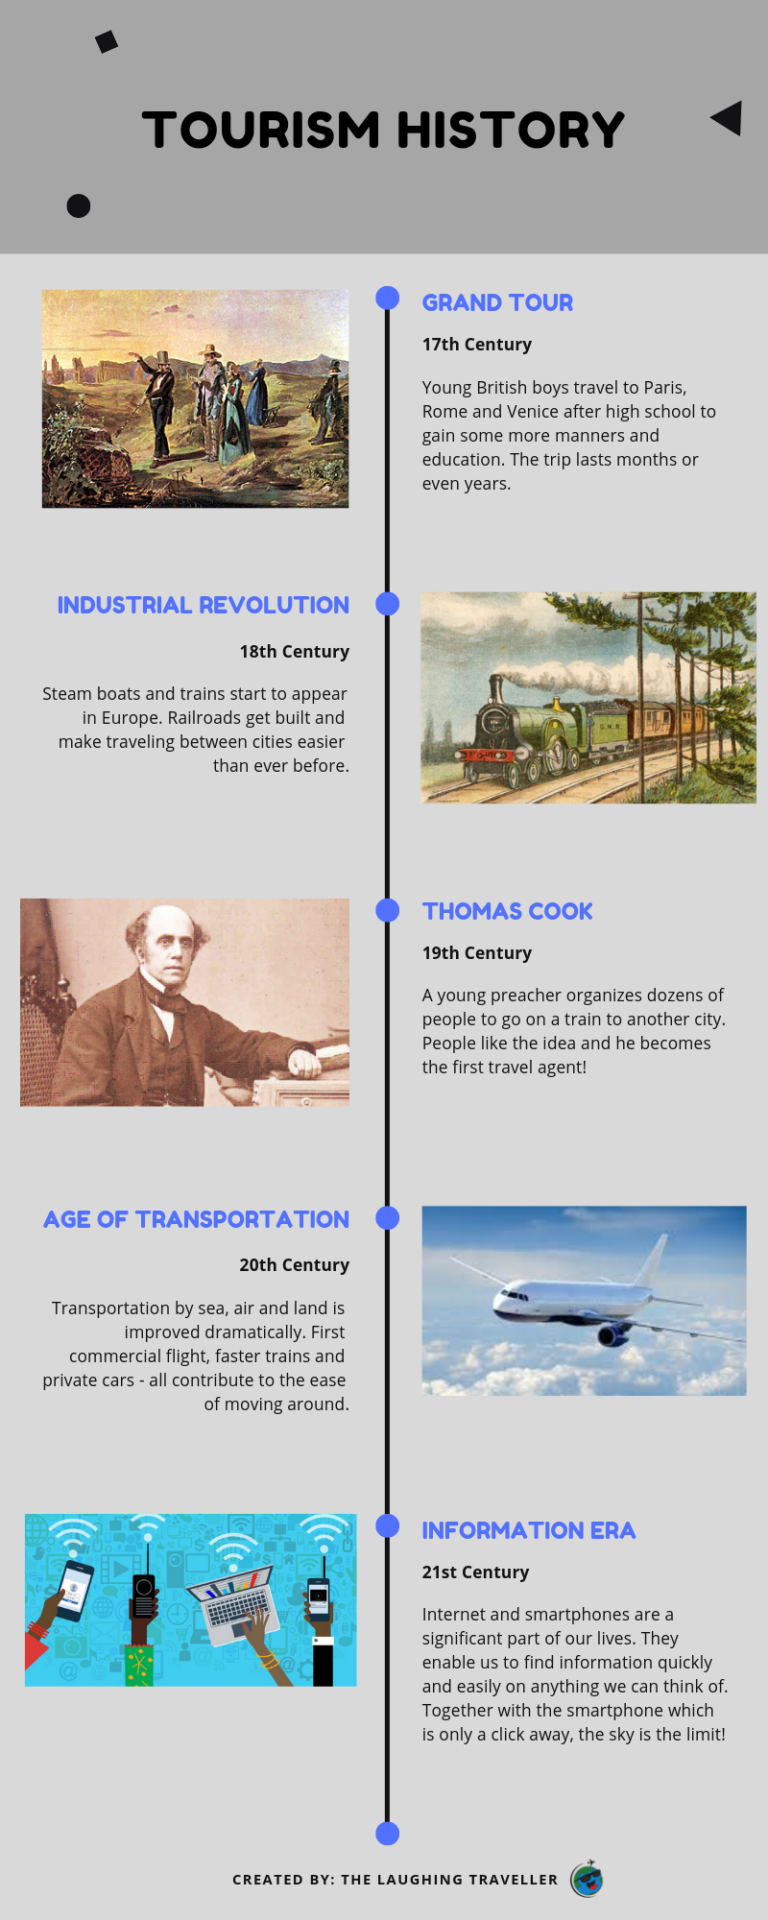 ההיסטוריה של התיירות